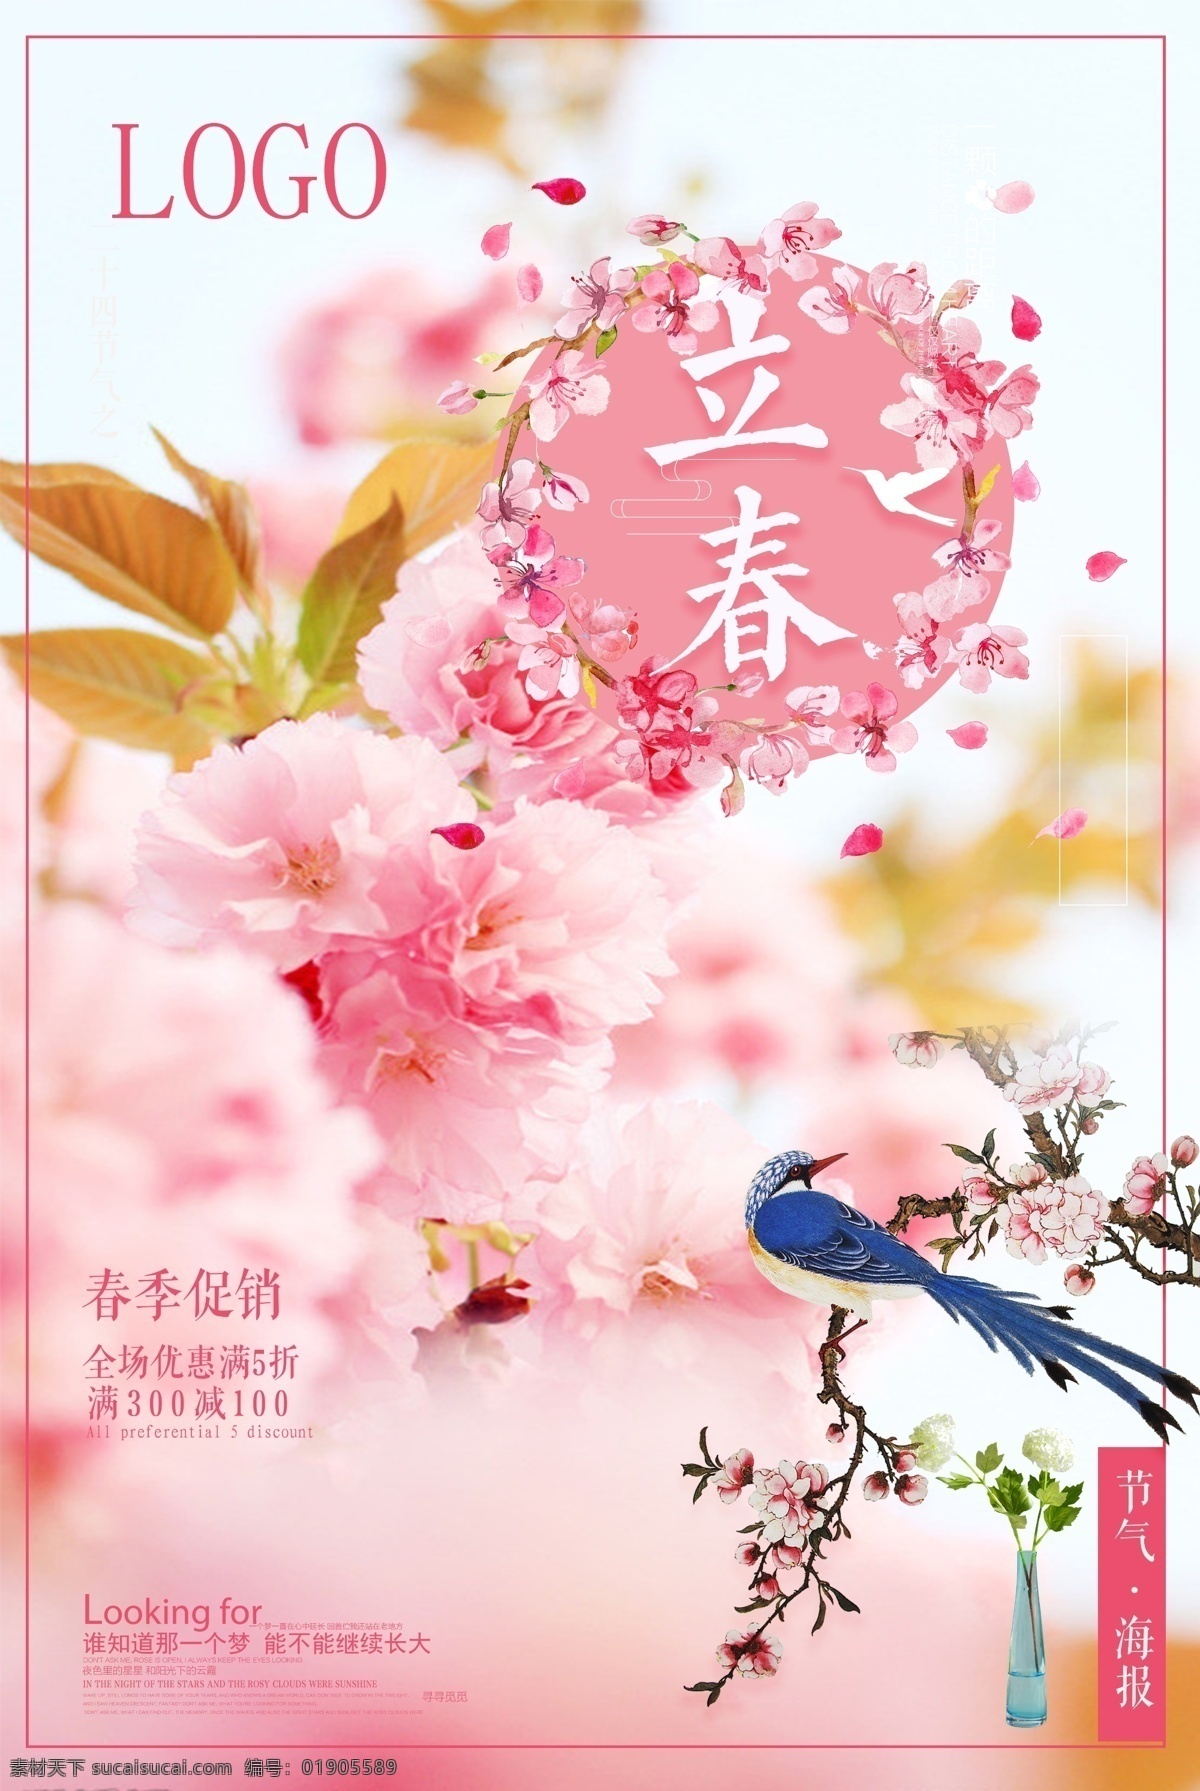 立春 海报 模板 传统 春气 促销 粉色 花香鸟语 节日 商场 宣传